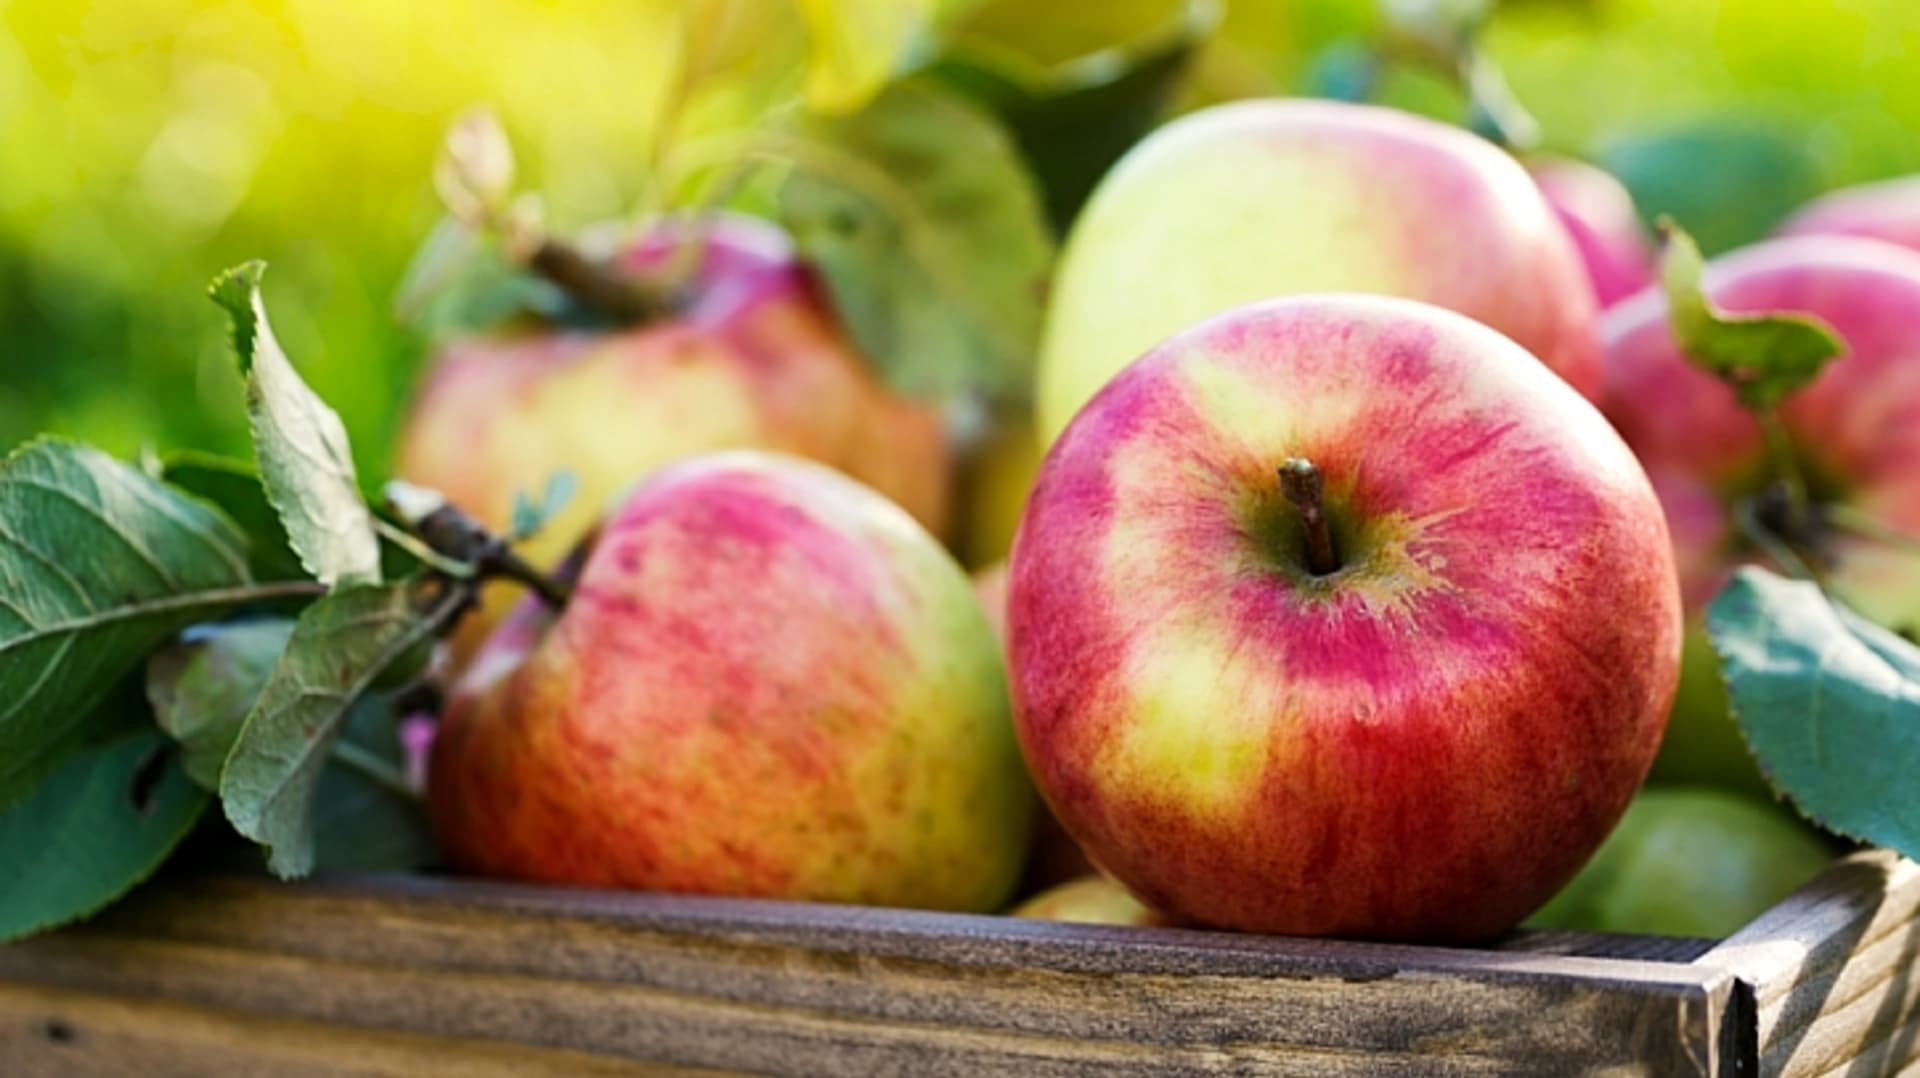 Na živiny a zdraví prospěšné látky je obzvláště bohatá slupka jablka, takže jejím oloupáním bychom se připravili o to nejlepší